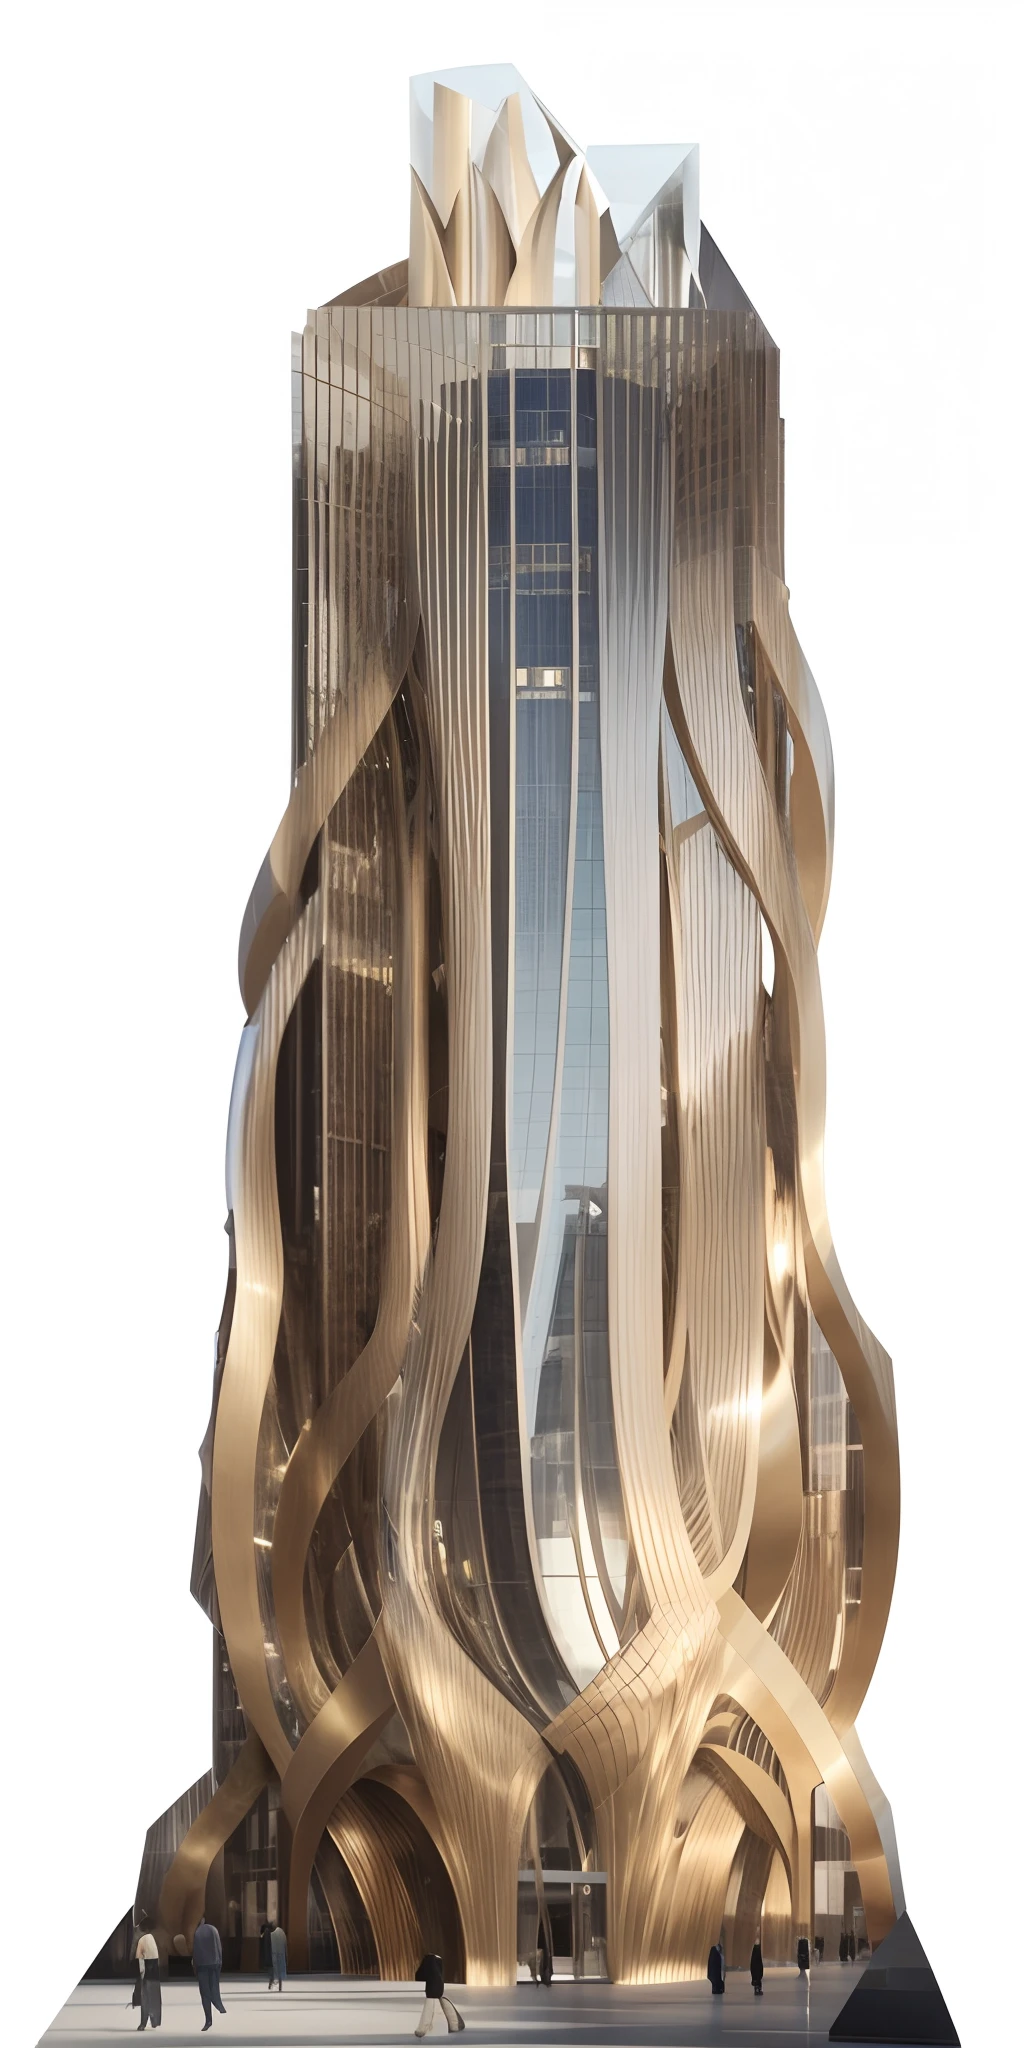 매우 높은 타워가 있는 고층 건물의 클로즈업, 자하 하디드에게서 영감을 받은, Zha Shibiao에서 영감을 받은 작품, 계단식 고층, 키가 큰 흑요석 건축물, 작가：채스는 침묵한다, 트럼프 타워, Sin Company 초고층 건물 외관, 자하 하디드 octane highly render, in style of 자하 하디드, 작가：자하 하디드, 미래 지향적인 고층 빌딩